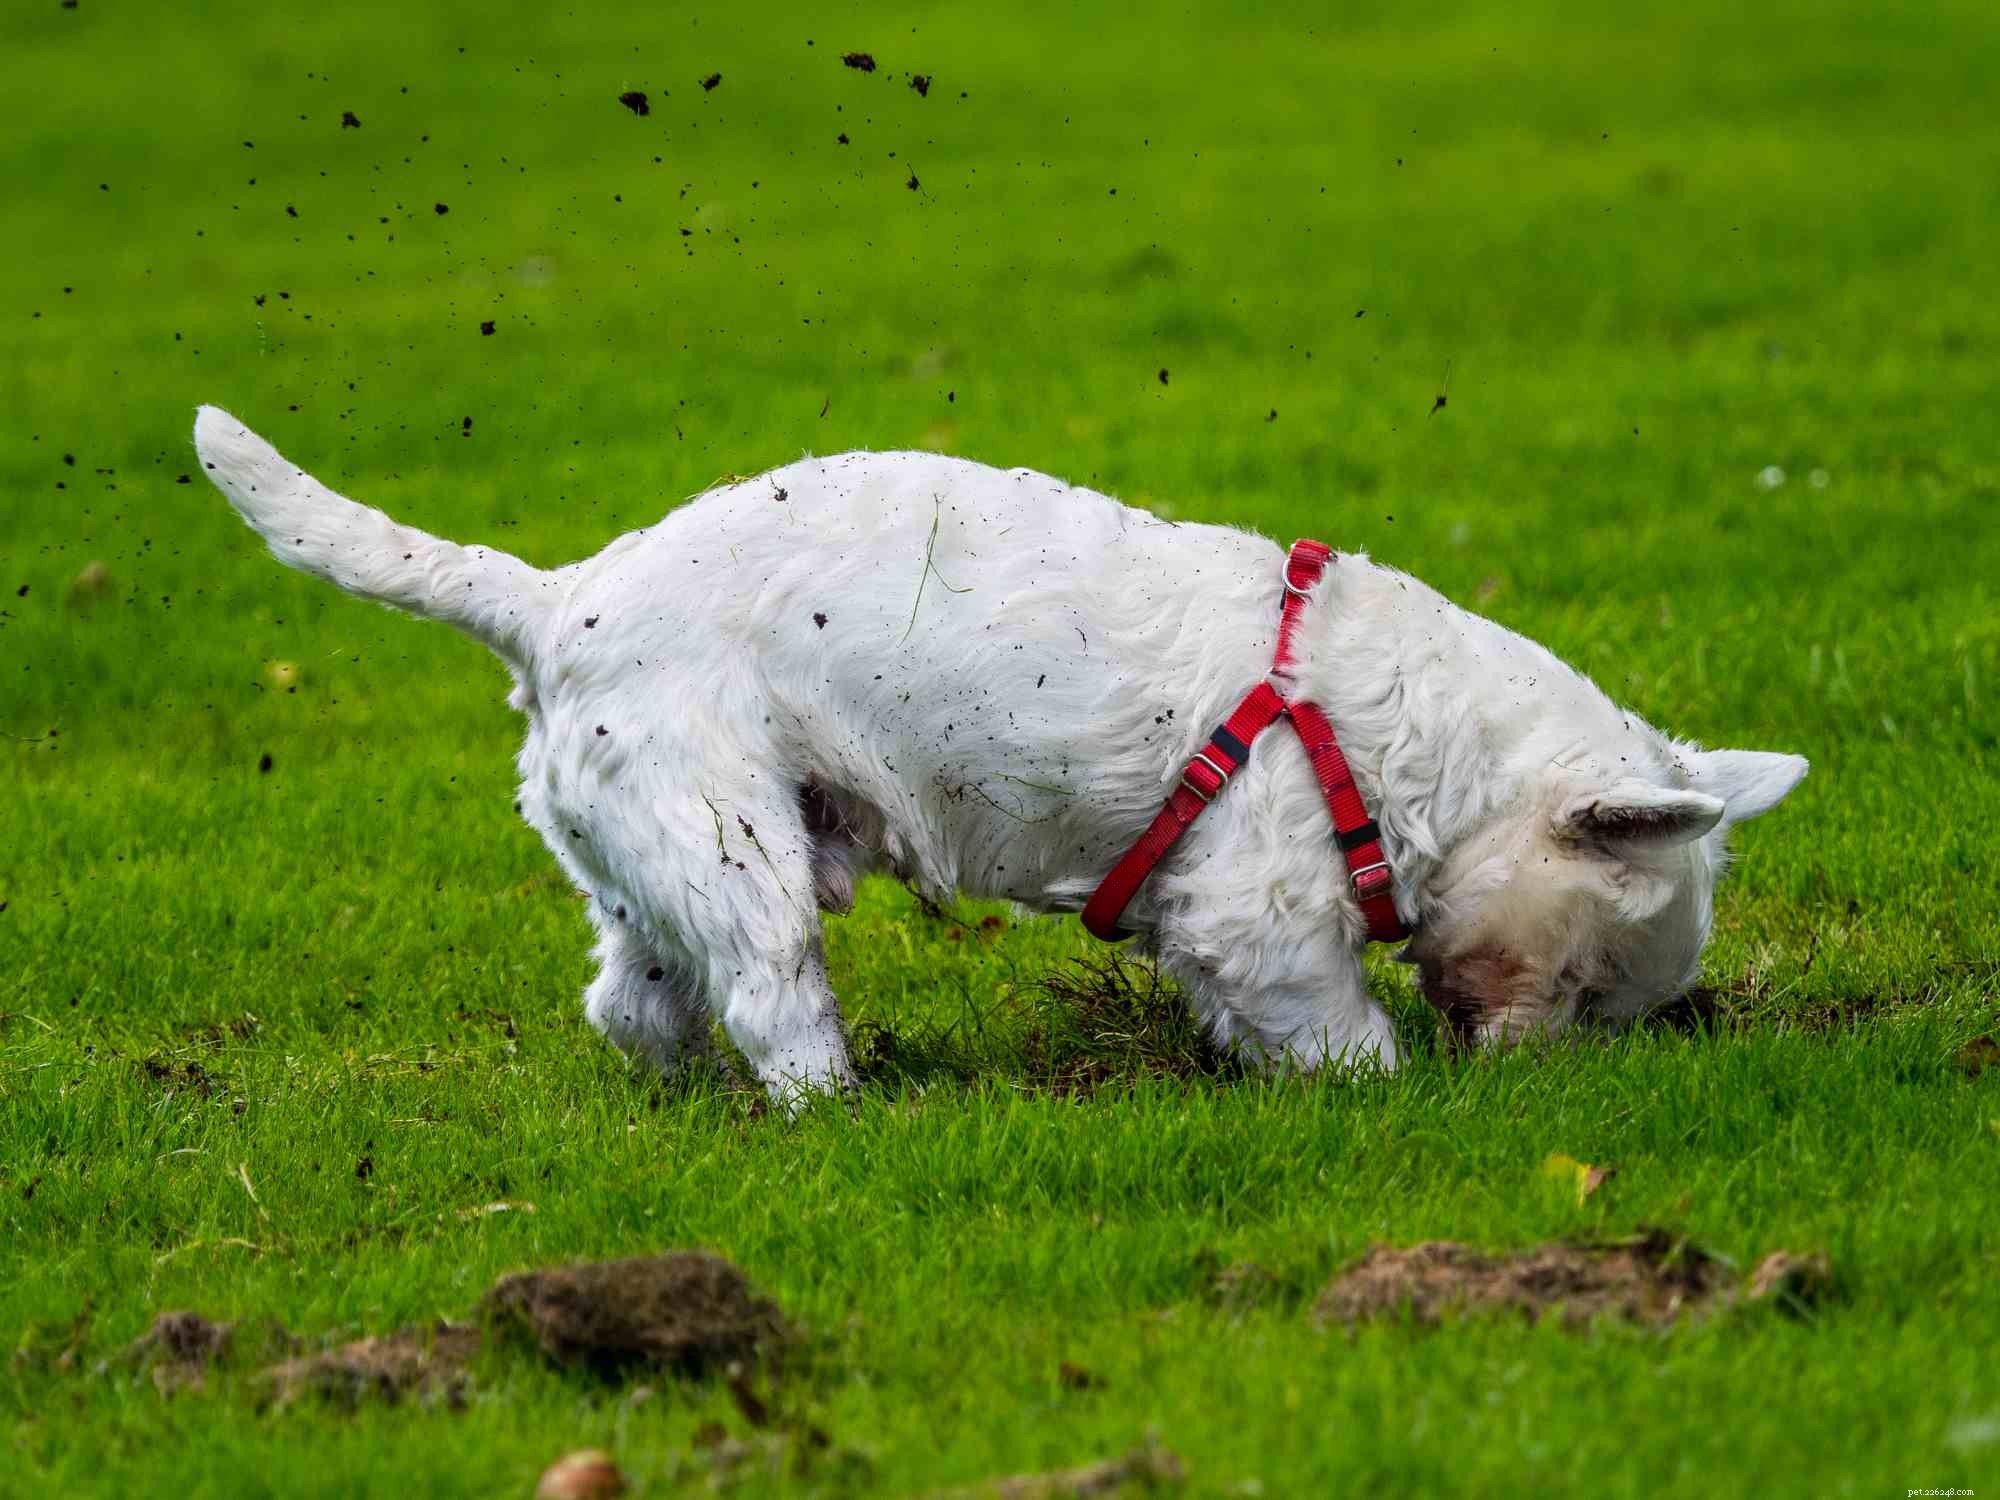 West Highland White Terrier (Westie):caratteristiche e cura della razza canina